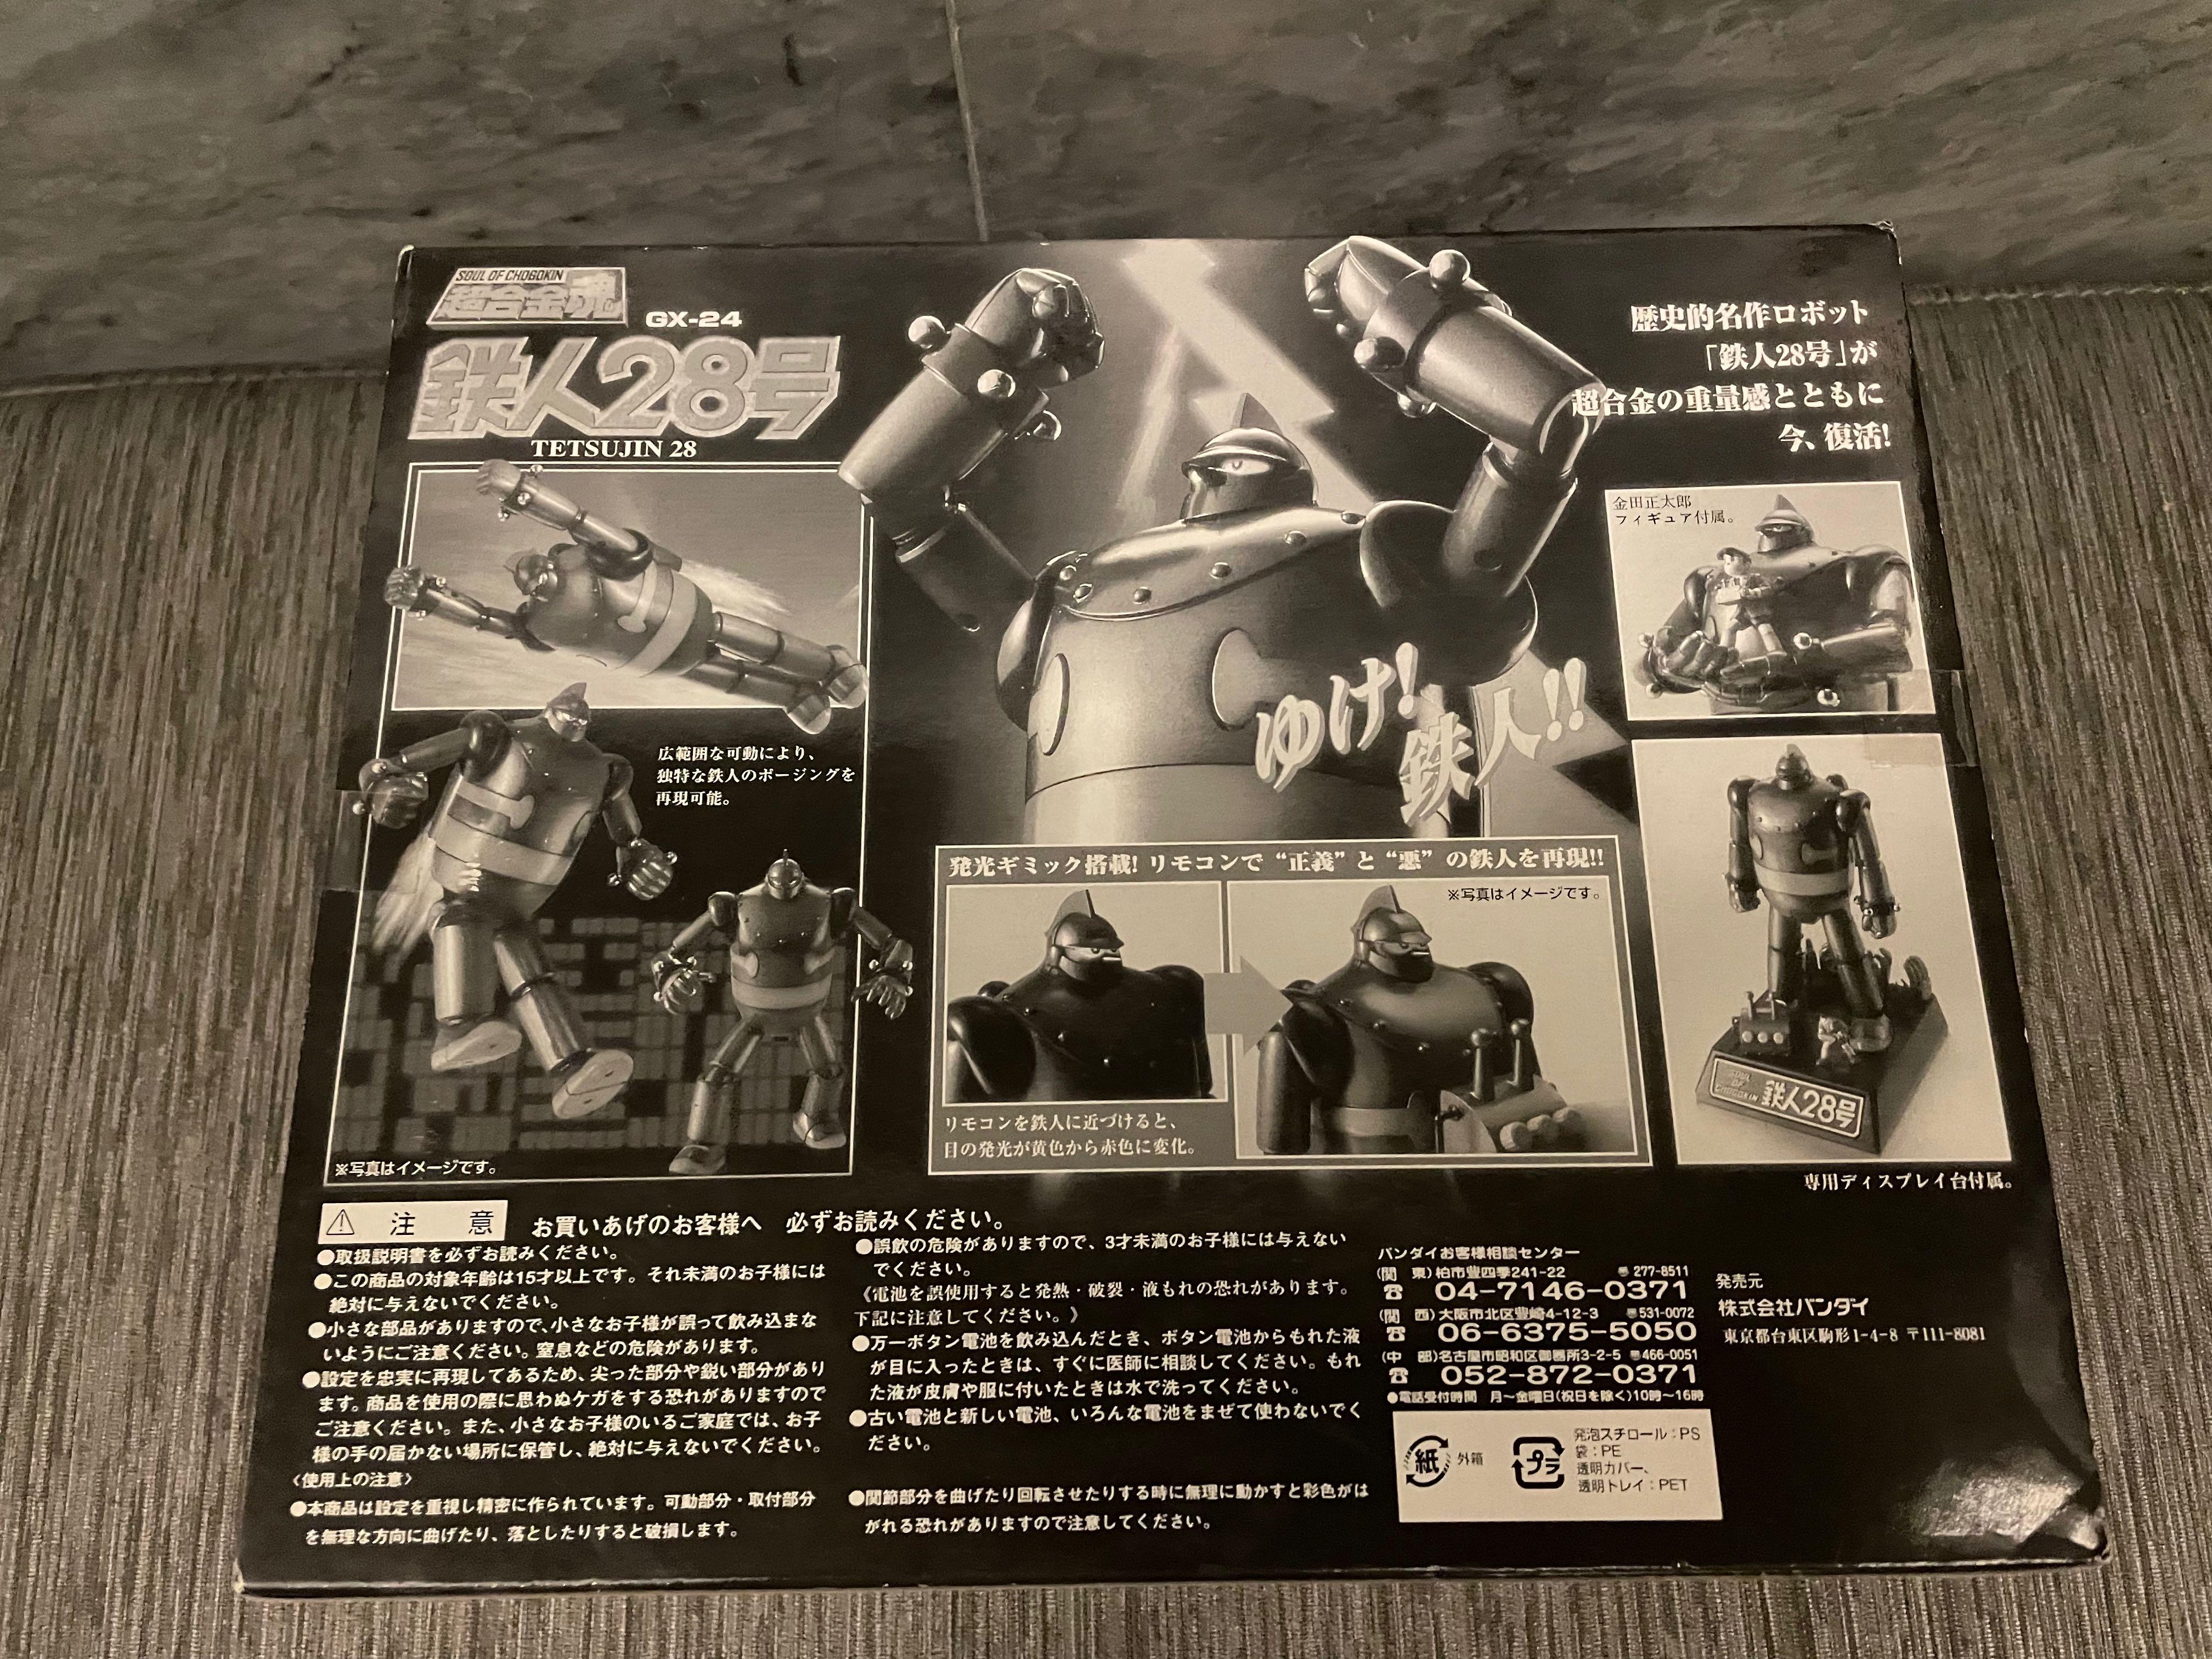 超合金魂GX-24 Tetsujin 28 DVD Box 特典, 興趣及遊戲, 玩具& 遊戲類 